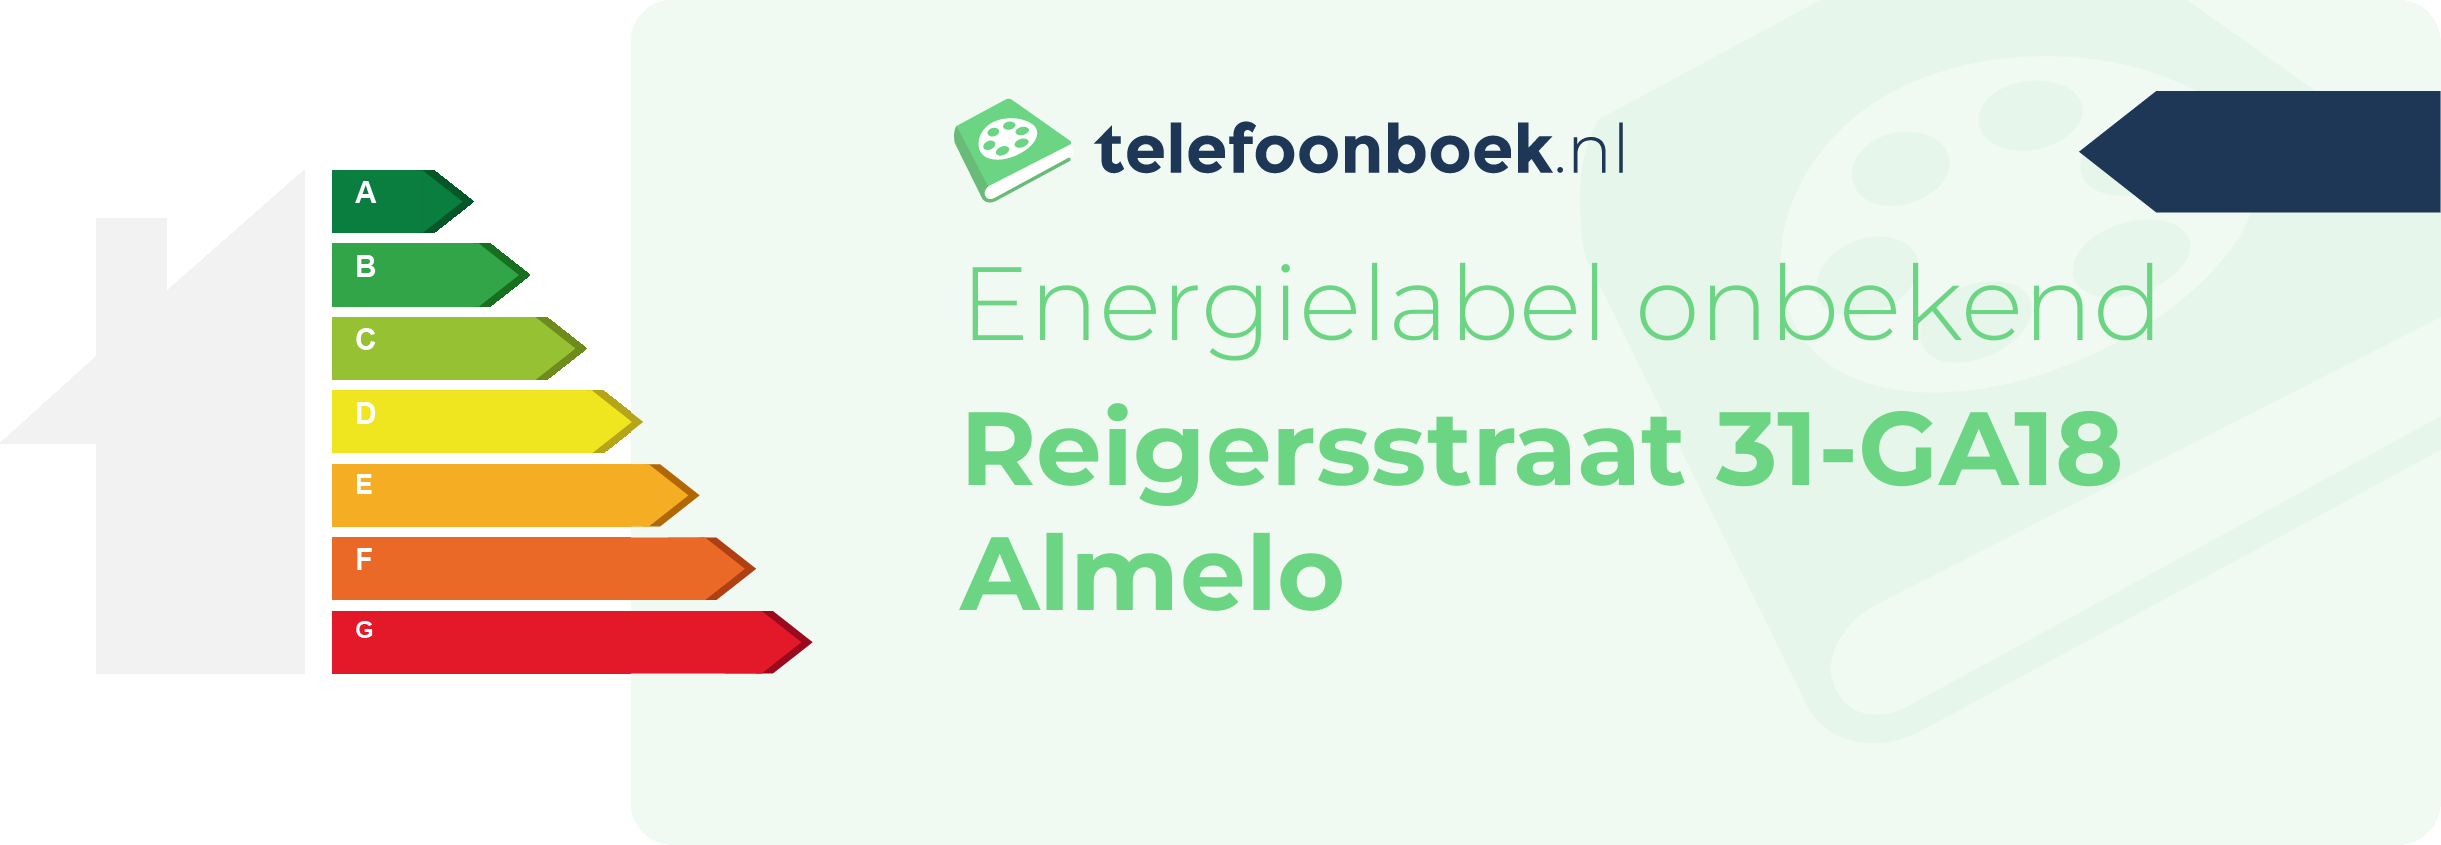 Energielabel Reigersstraat 31-GA18 Almelo